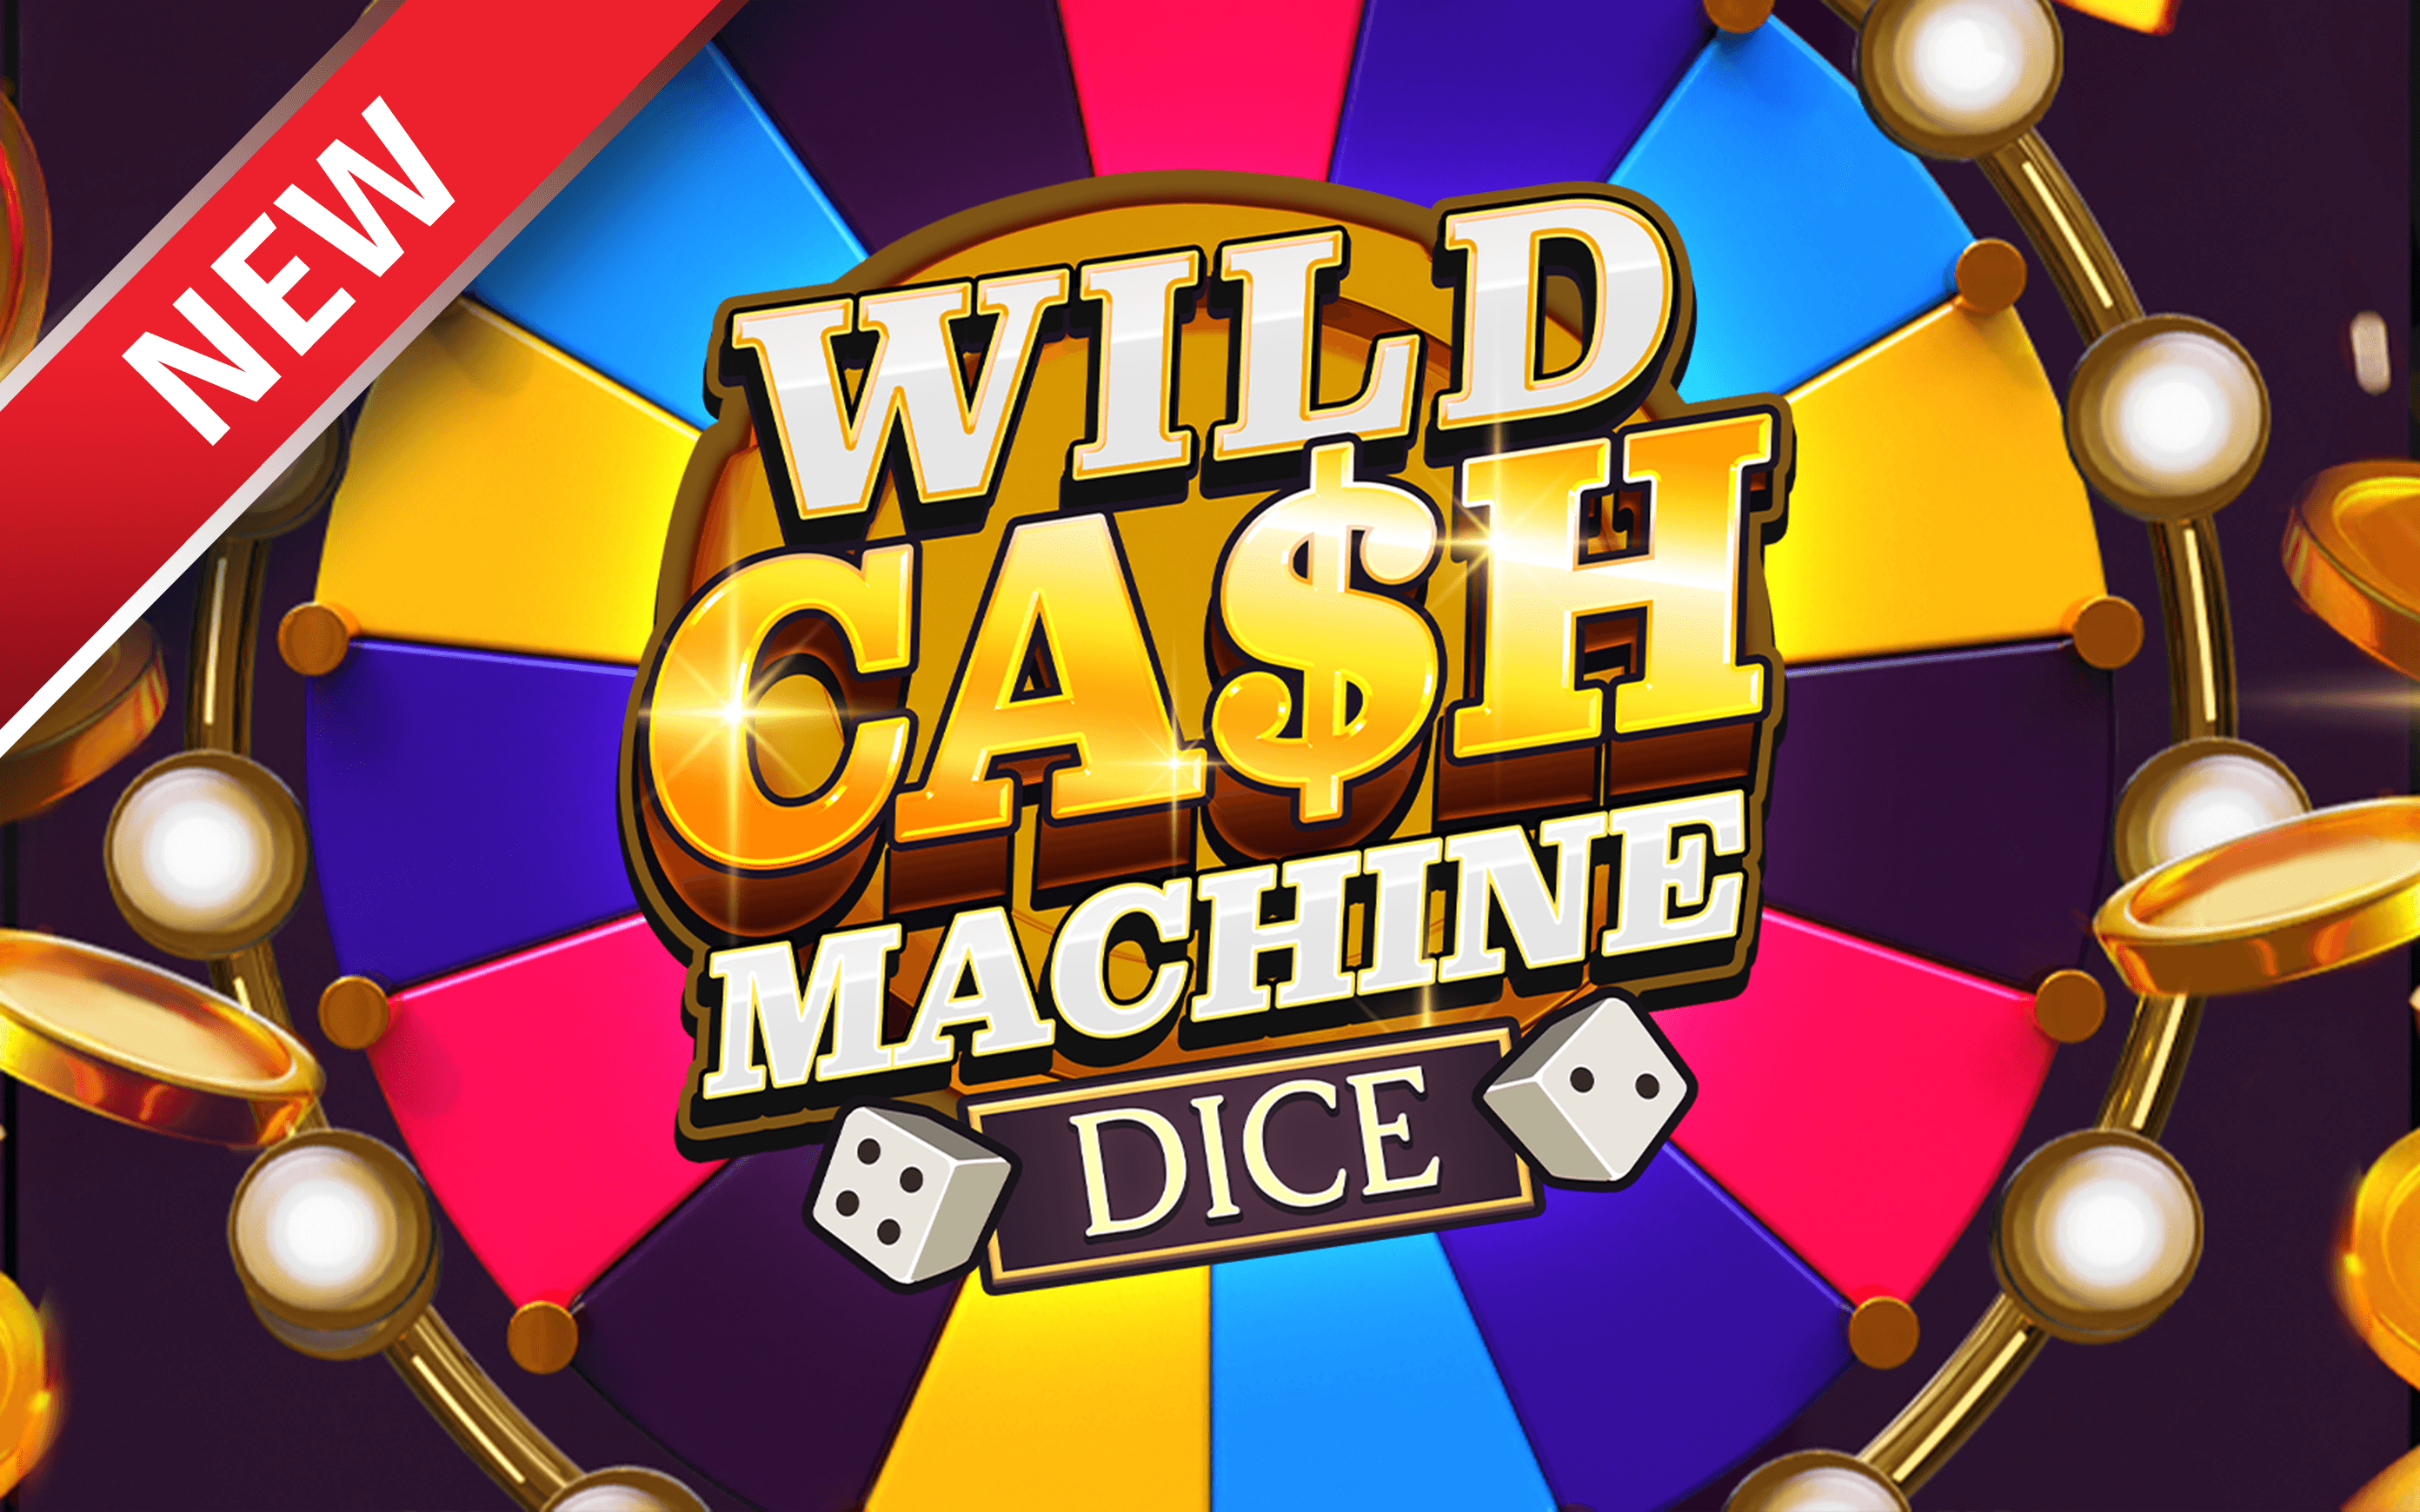 Juega a Wild Cash Machine Dice en el casino en línea de Starcasino.be